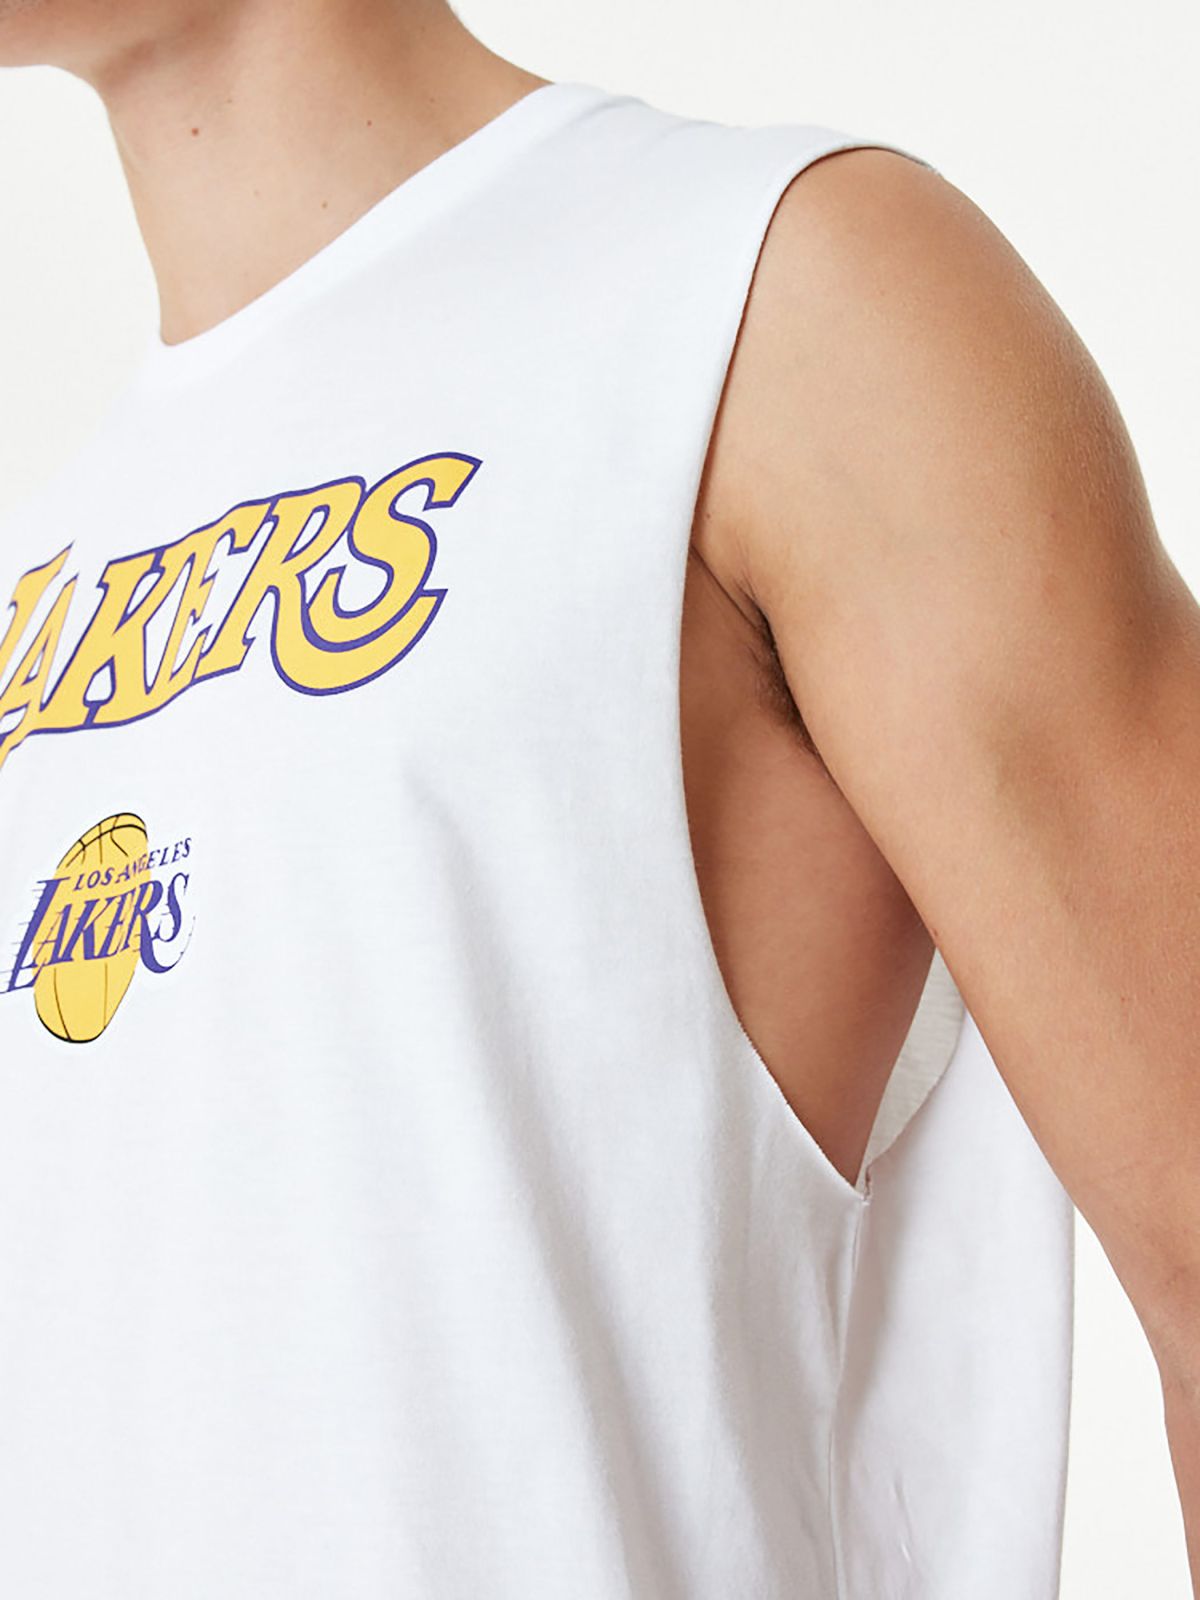  גופיית לוגו Lakers של NEW ERA